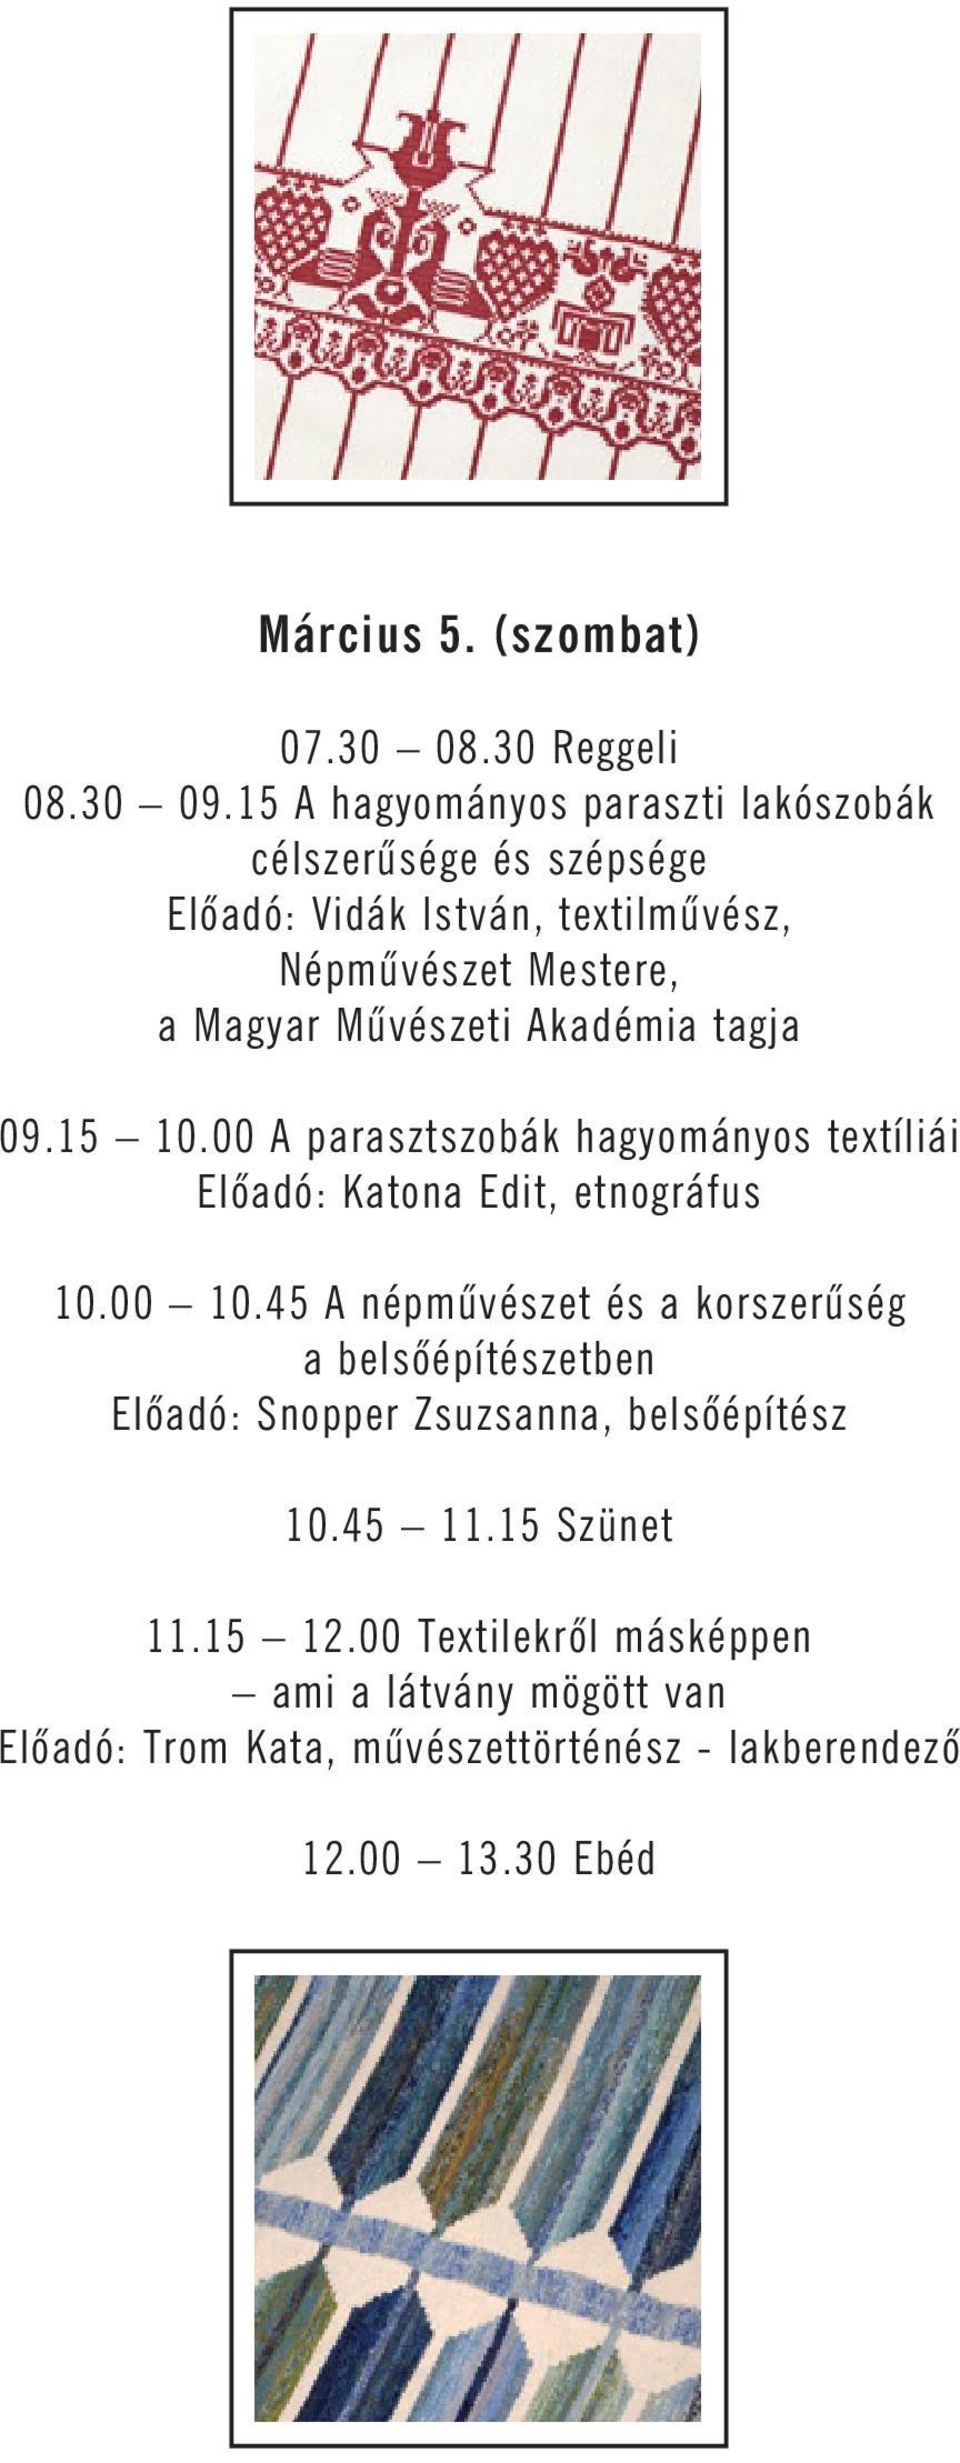 Mûvészeti Akadémia tagja 09.15 10.00 A parasztszobák hagyományos textíliái Elõadó: Katona Edit, etnográfus 10.00 10.